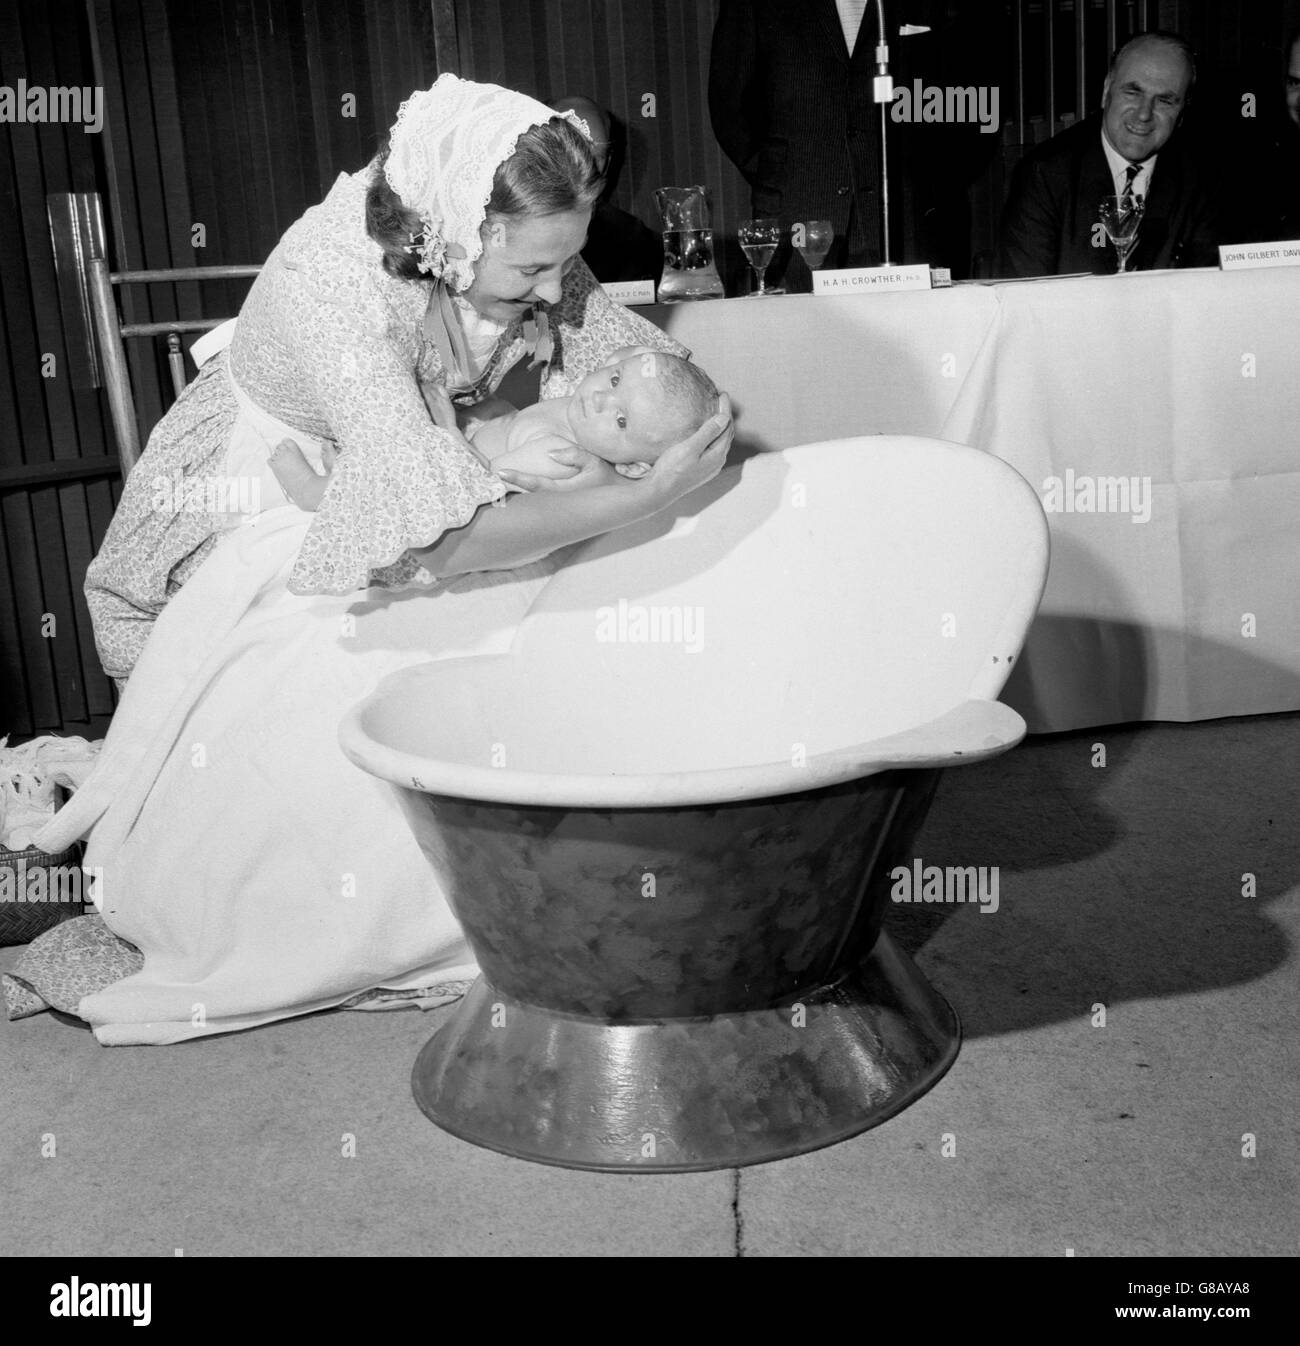 Un bébé baigné dans « Infra-Care », un nouveau produit qui fait sortir la misère du bain pour les mères et les bébés., lors d'une conférence de presse à l'hôtel Royal Garden de Londres. Banque D'Images